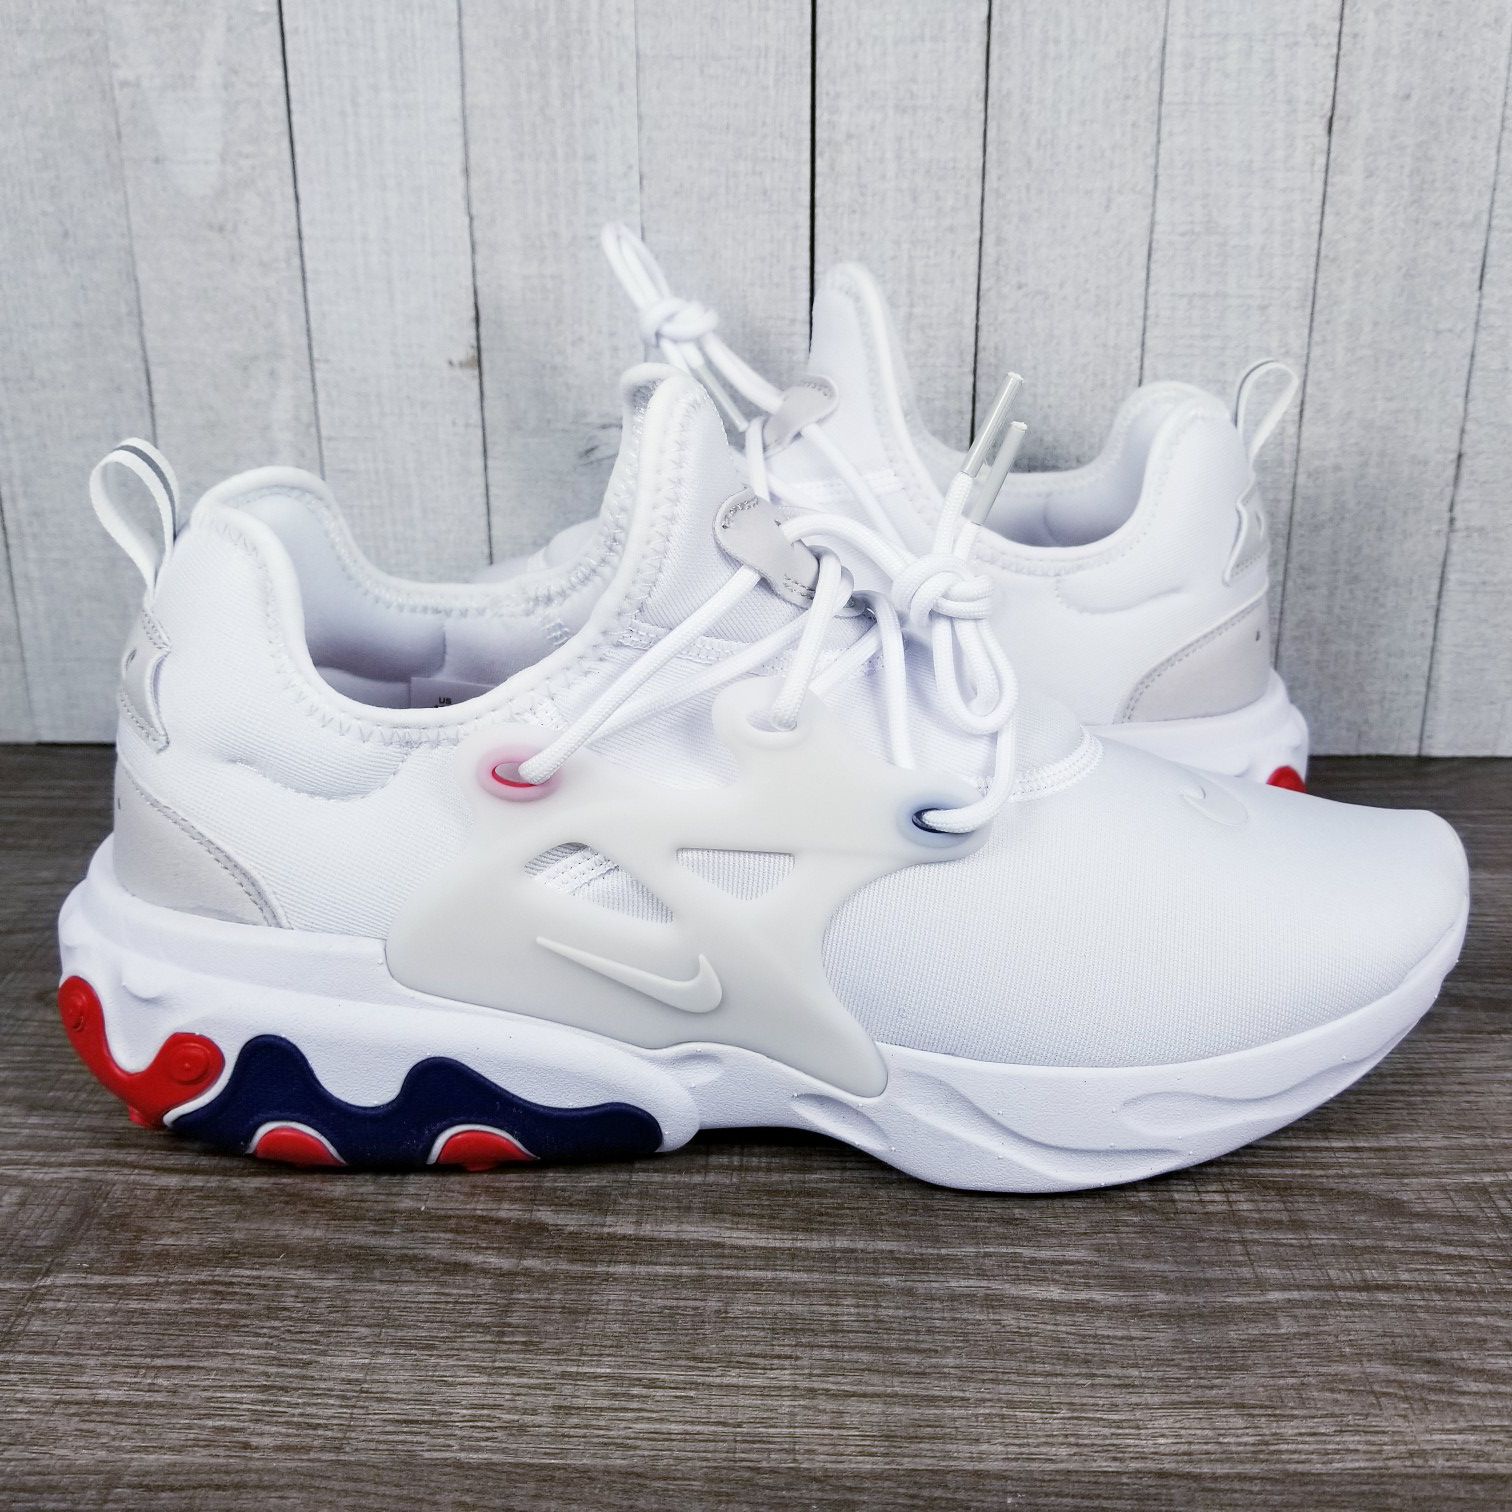 Nike React Presto USA AV2605-102 White Red Blue Running Shoes Men's Size 10.5